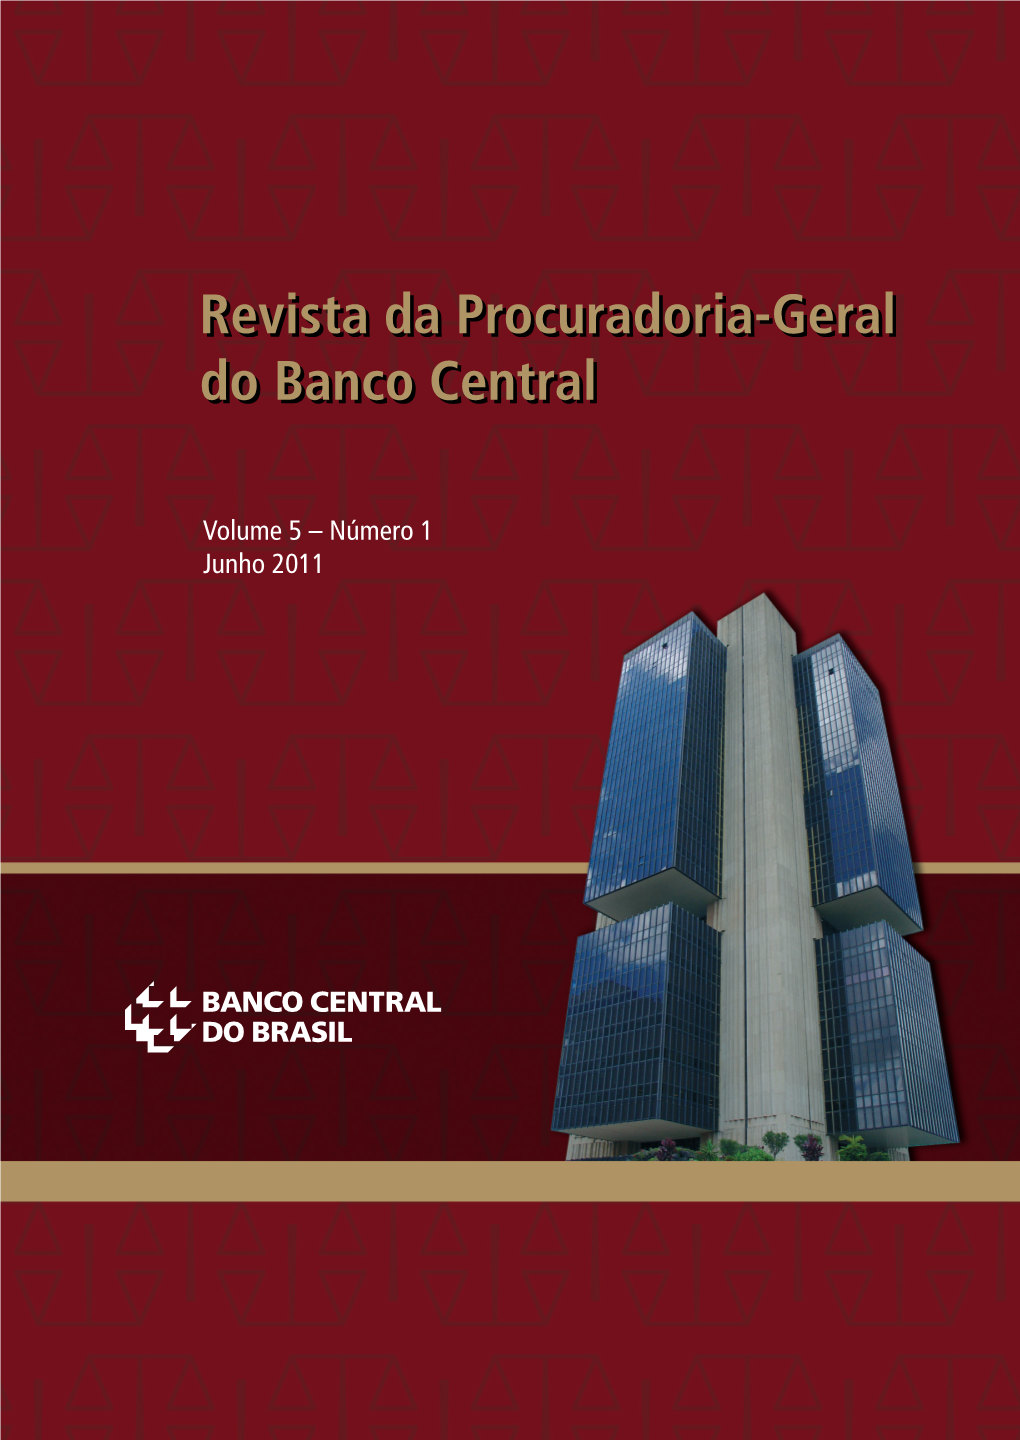 Revista Da Procuradoria-Geral Do Banco Central R Ev I S T a Da P R O C U